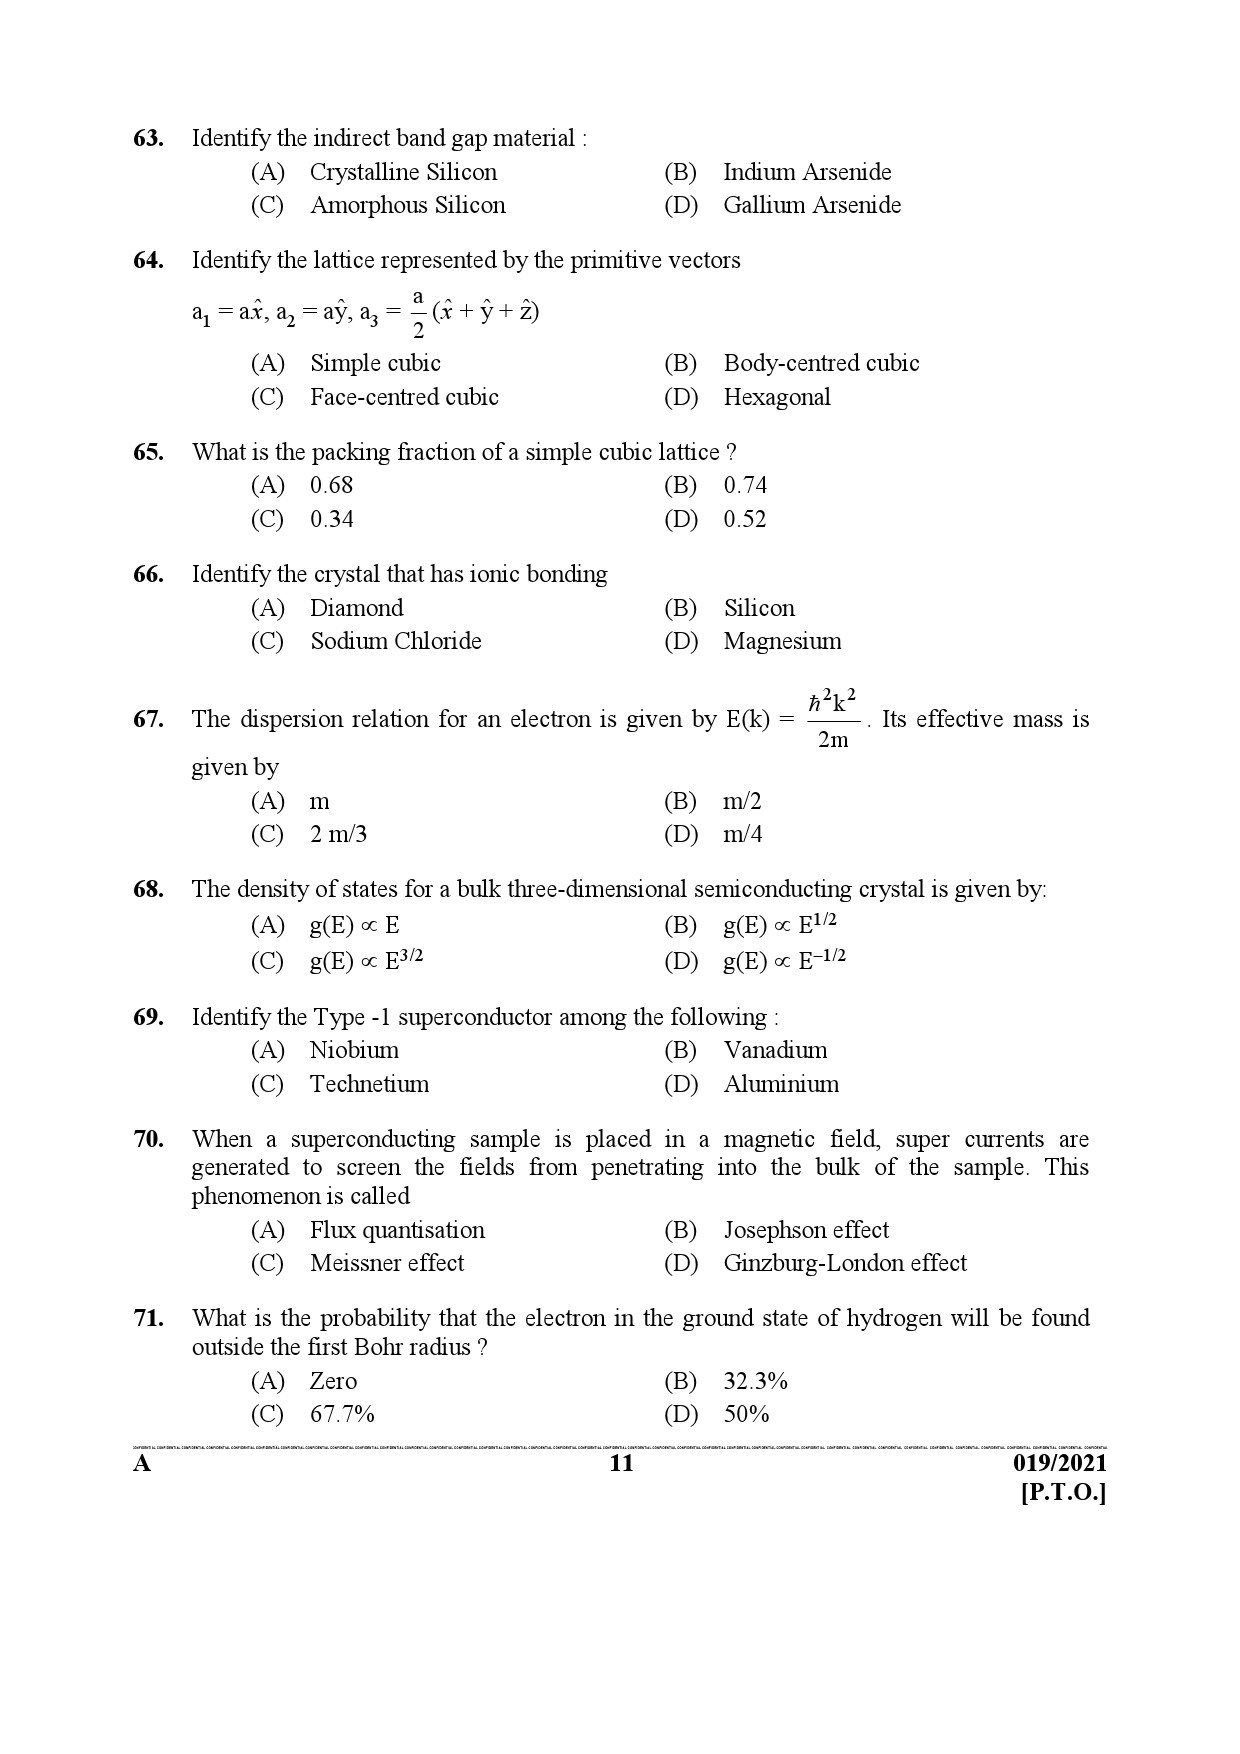 KPSC Scientific Officer Physics Exam 2021 Code 0192021 10